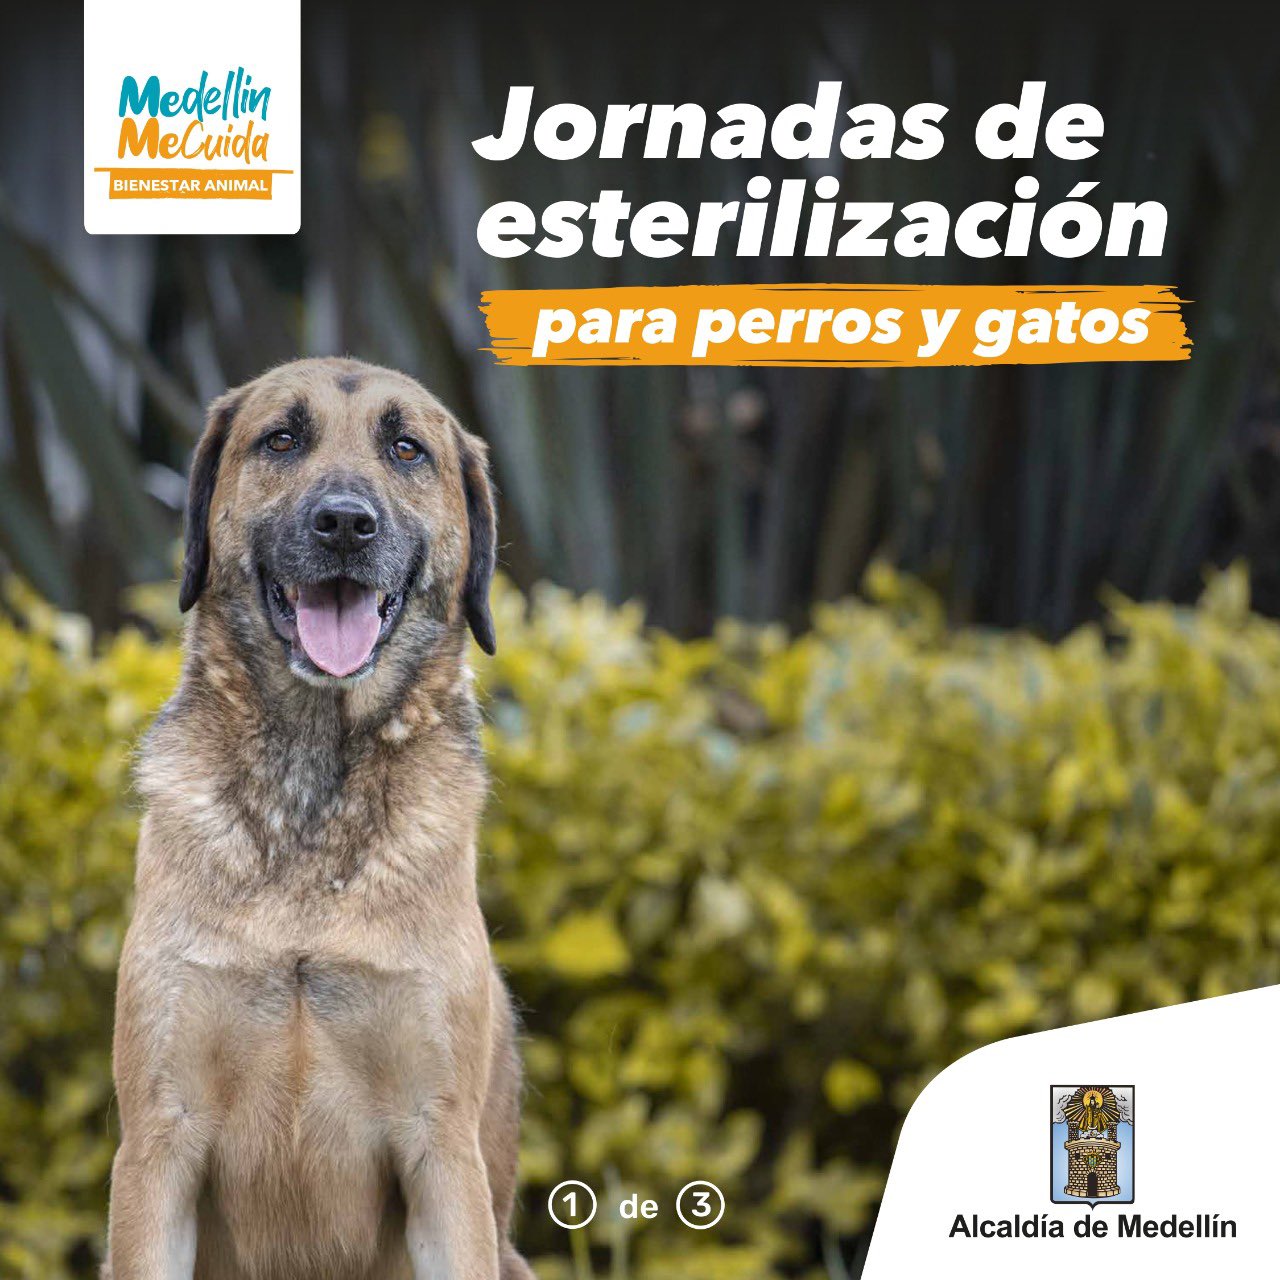 Alcaldía de Medellín ar Twitter: "Conoce nuestras jornadas de esterilización  gratuita para perros y gatos. Recuerda que estas son con previa inscripción  en &gt;&gt; https://t.co/n4eVW4s1xa 🥰. Queremos bienestar y protección  para los